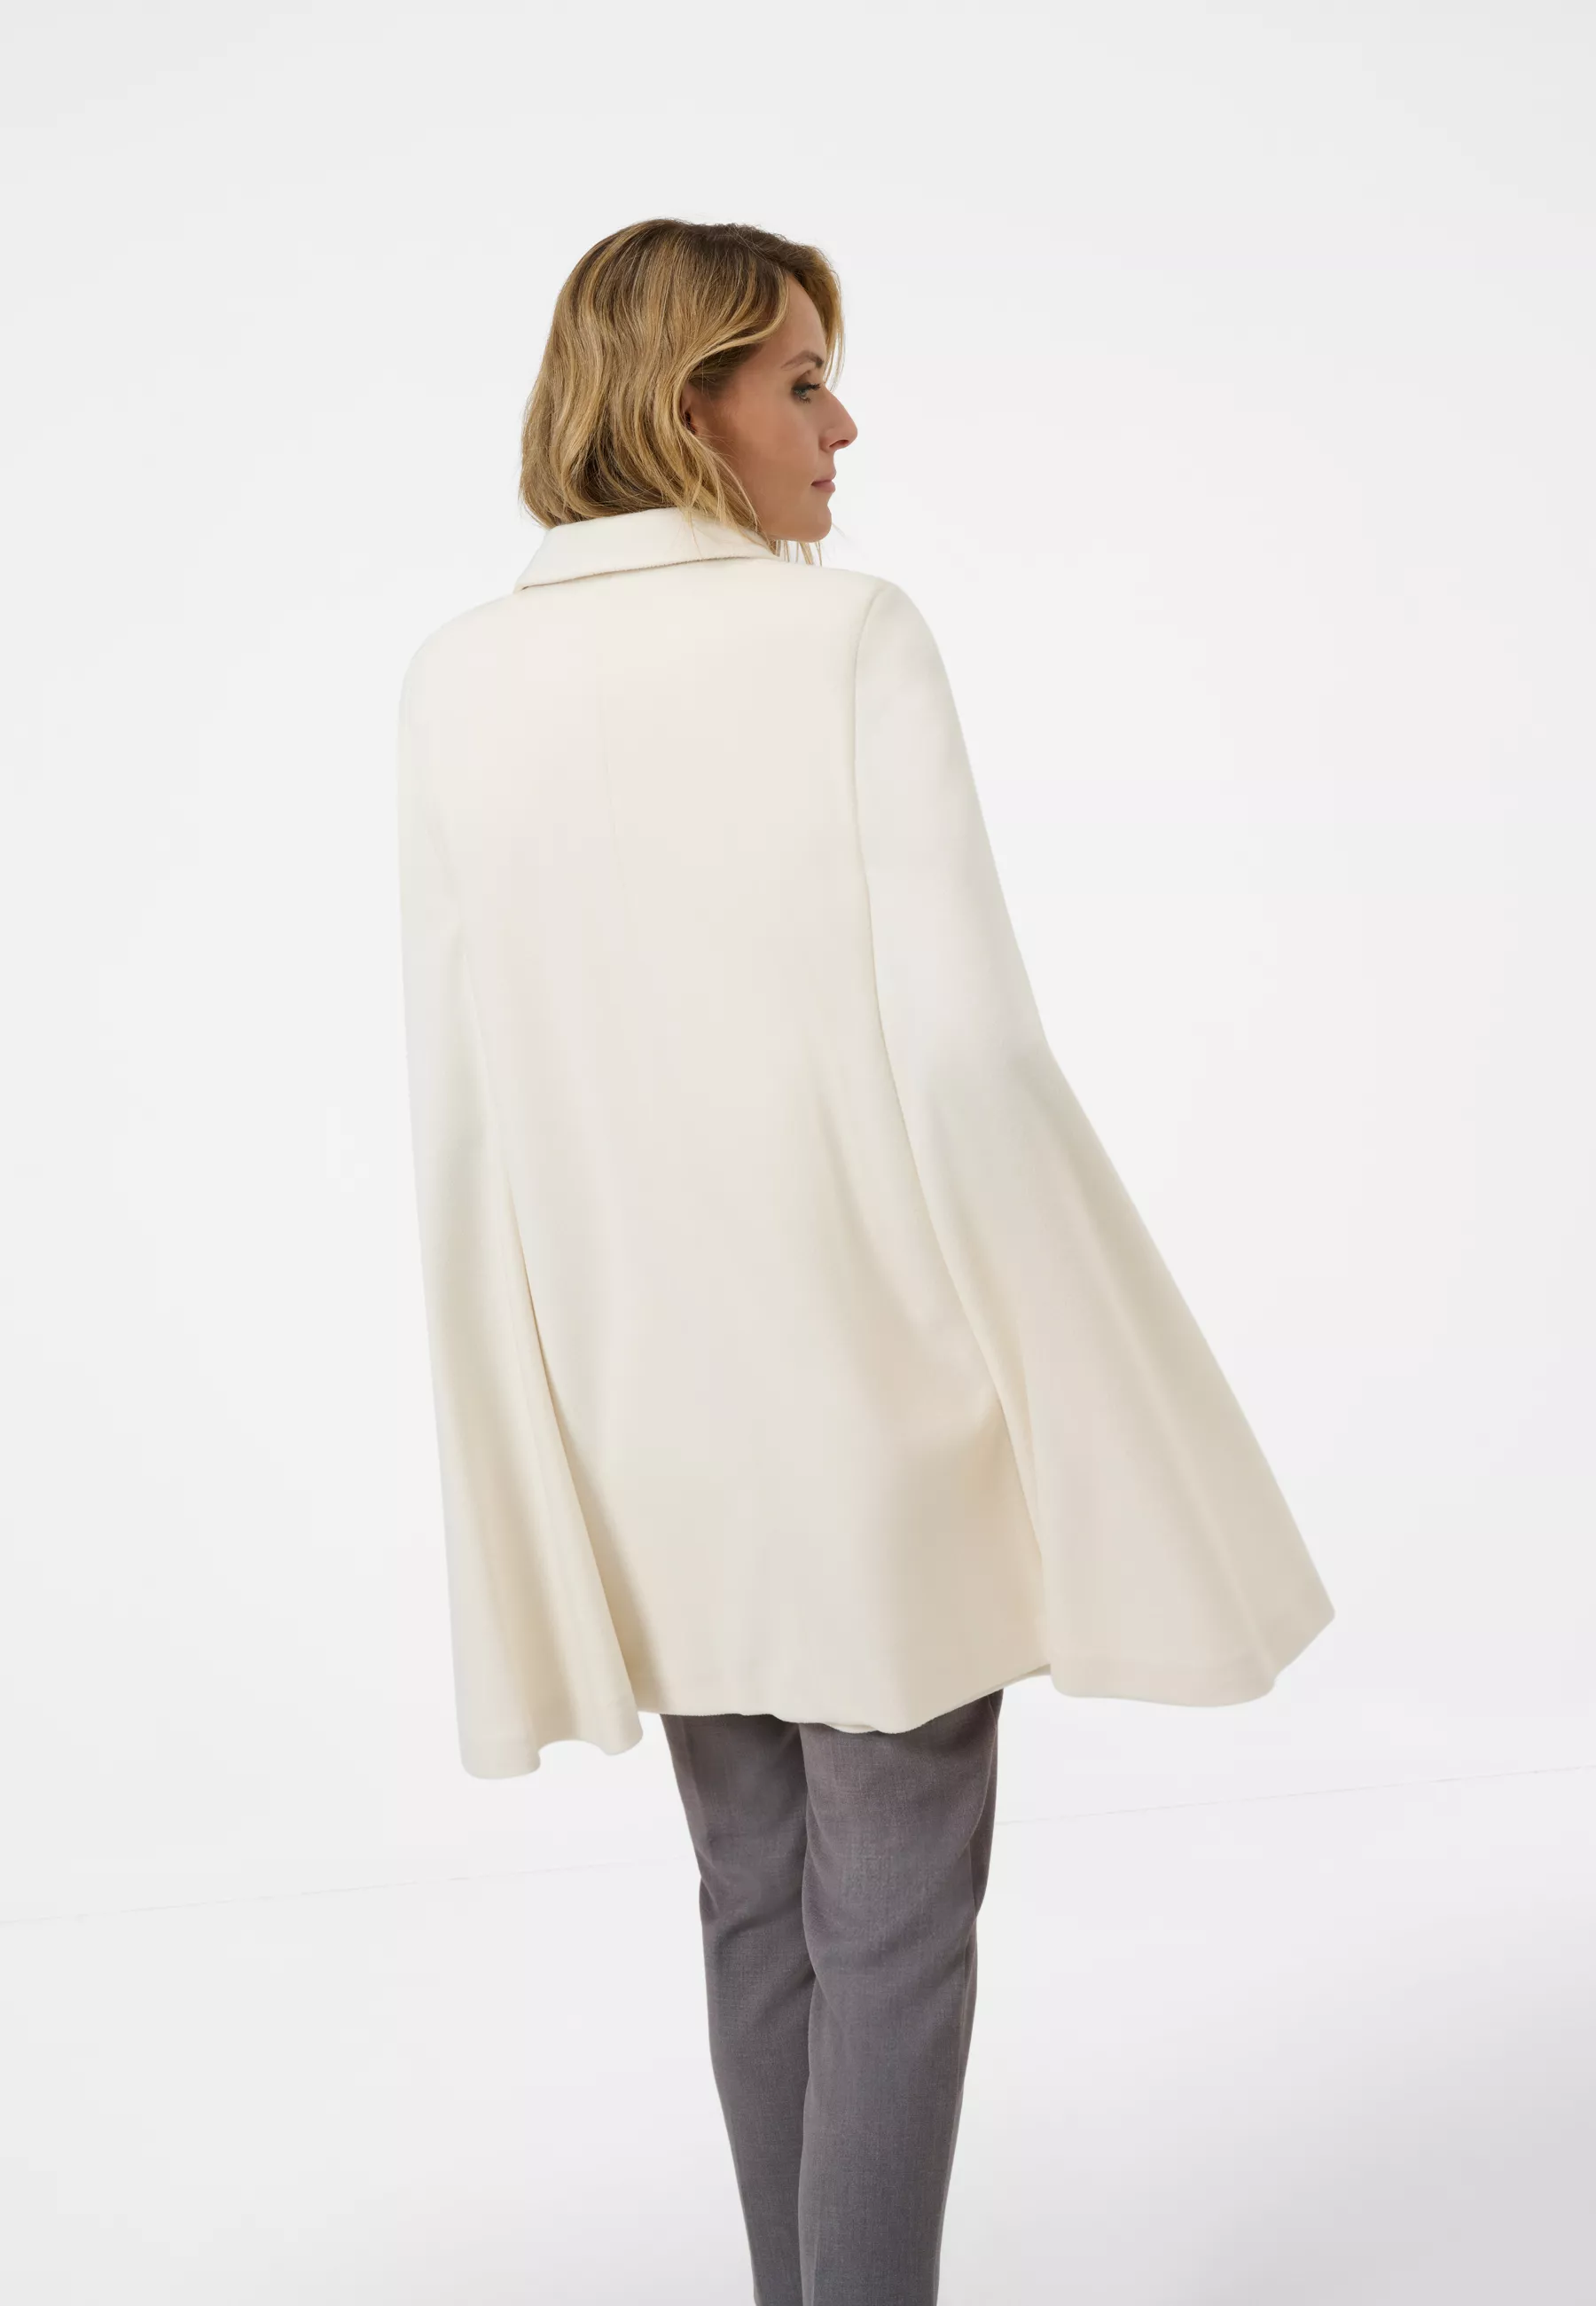 Damen Textil Mantel Noemi in Weiß von Ricano, Rückansicht am Model